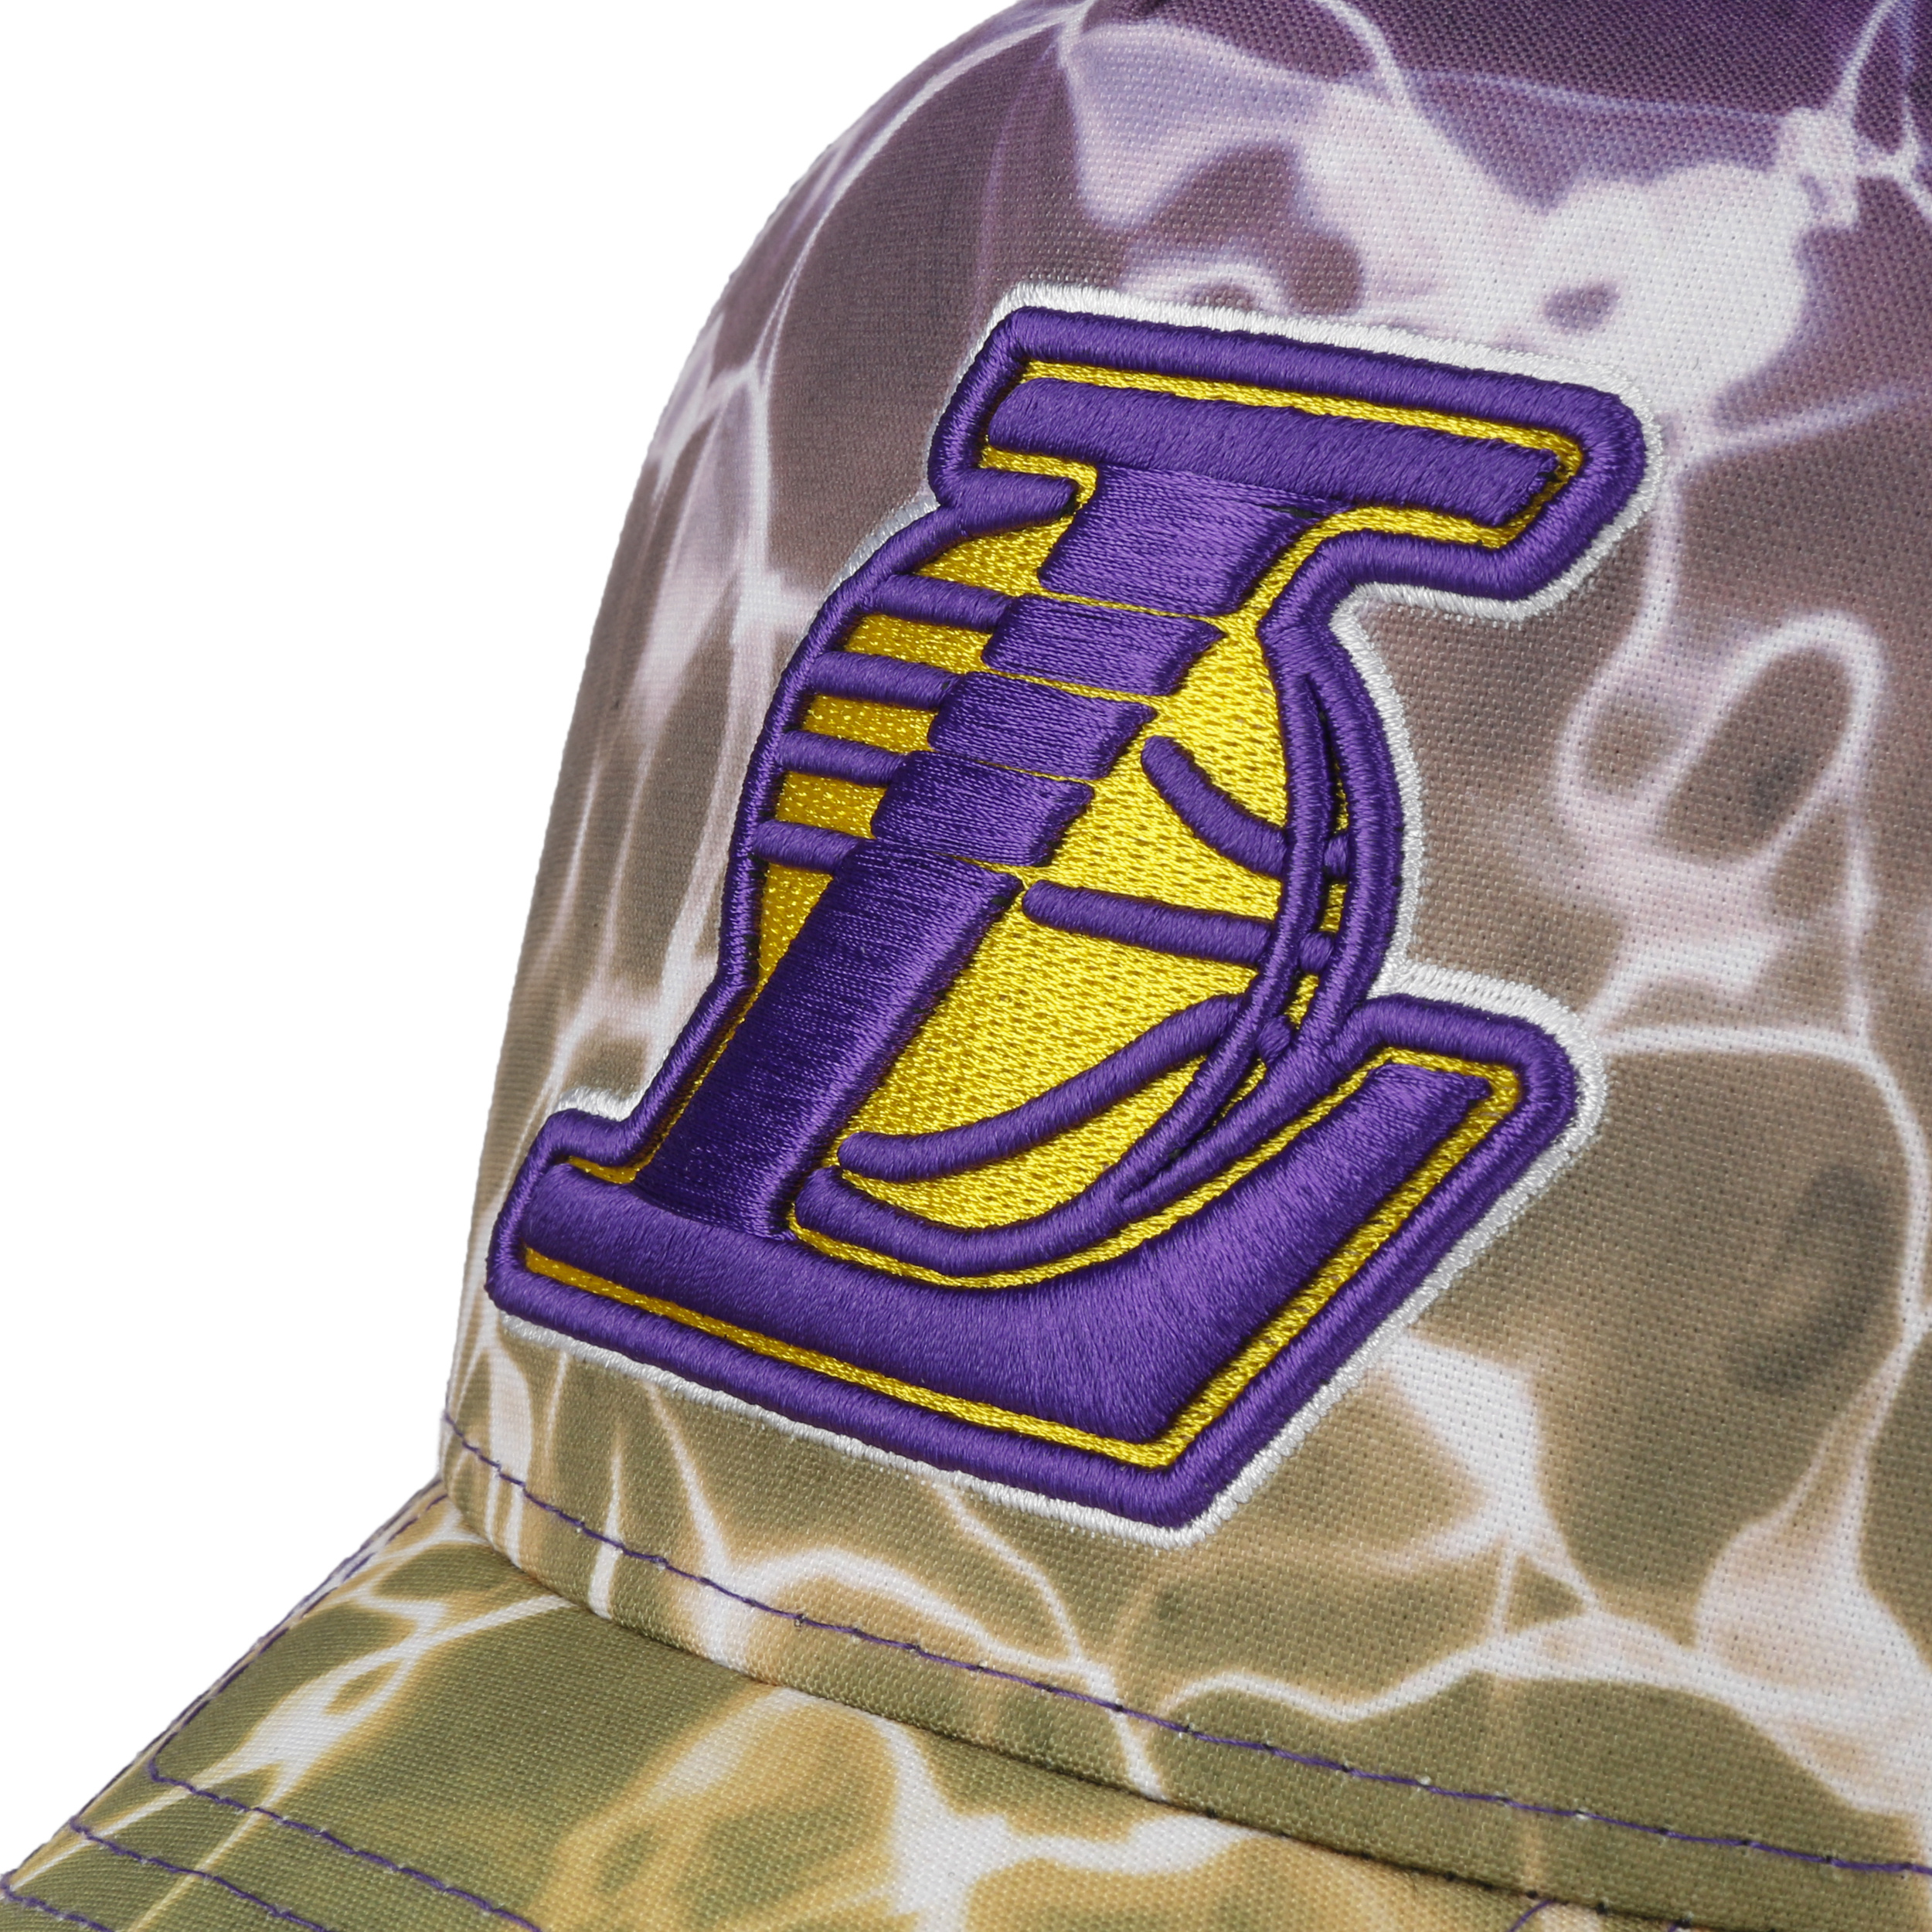 Los Angeles Lakers New Era Mesh Brim Snapback Adjustable Hat - Purple